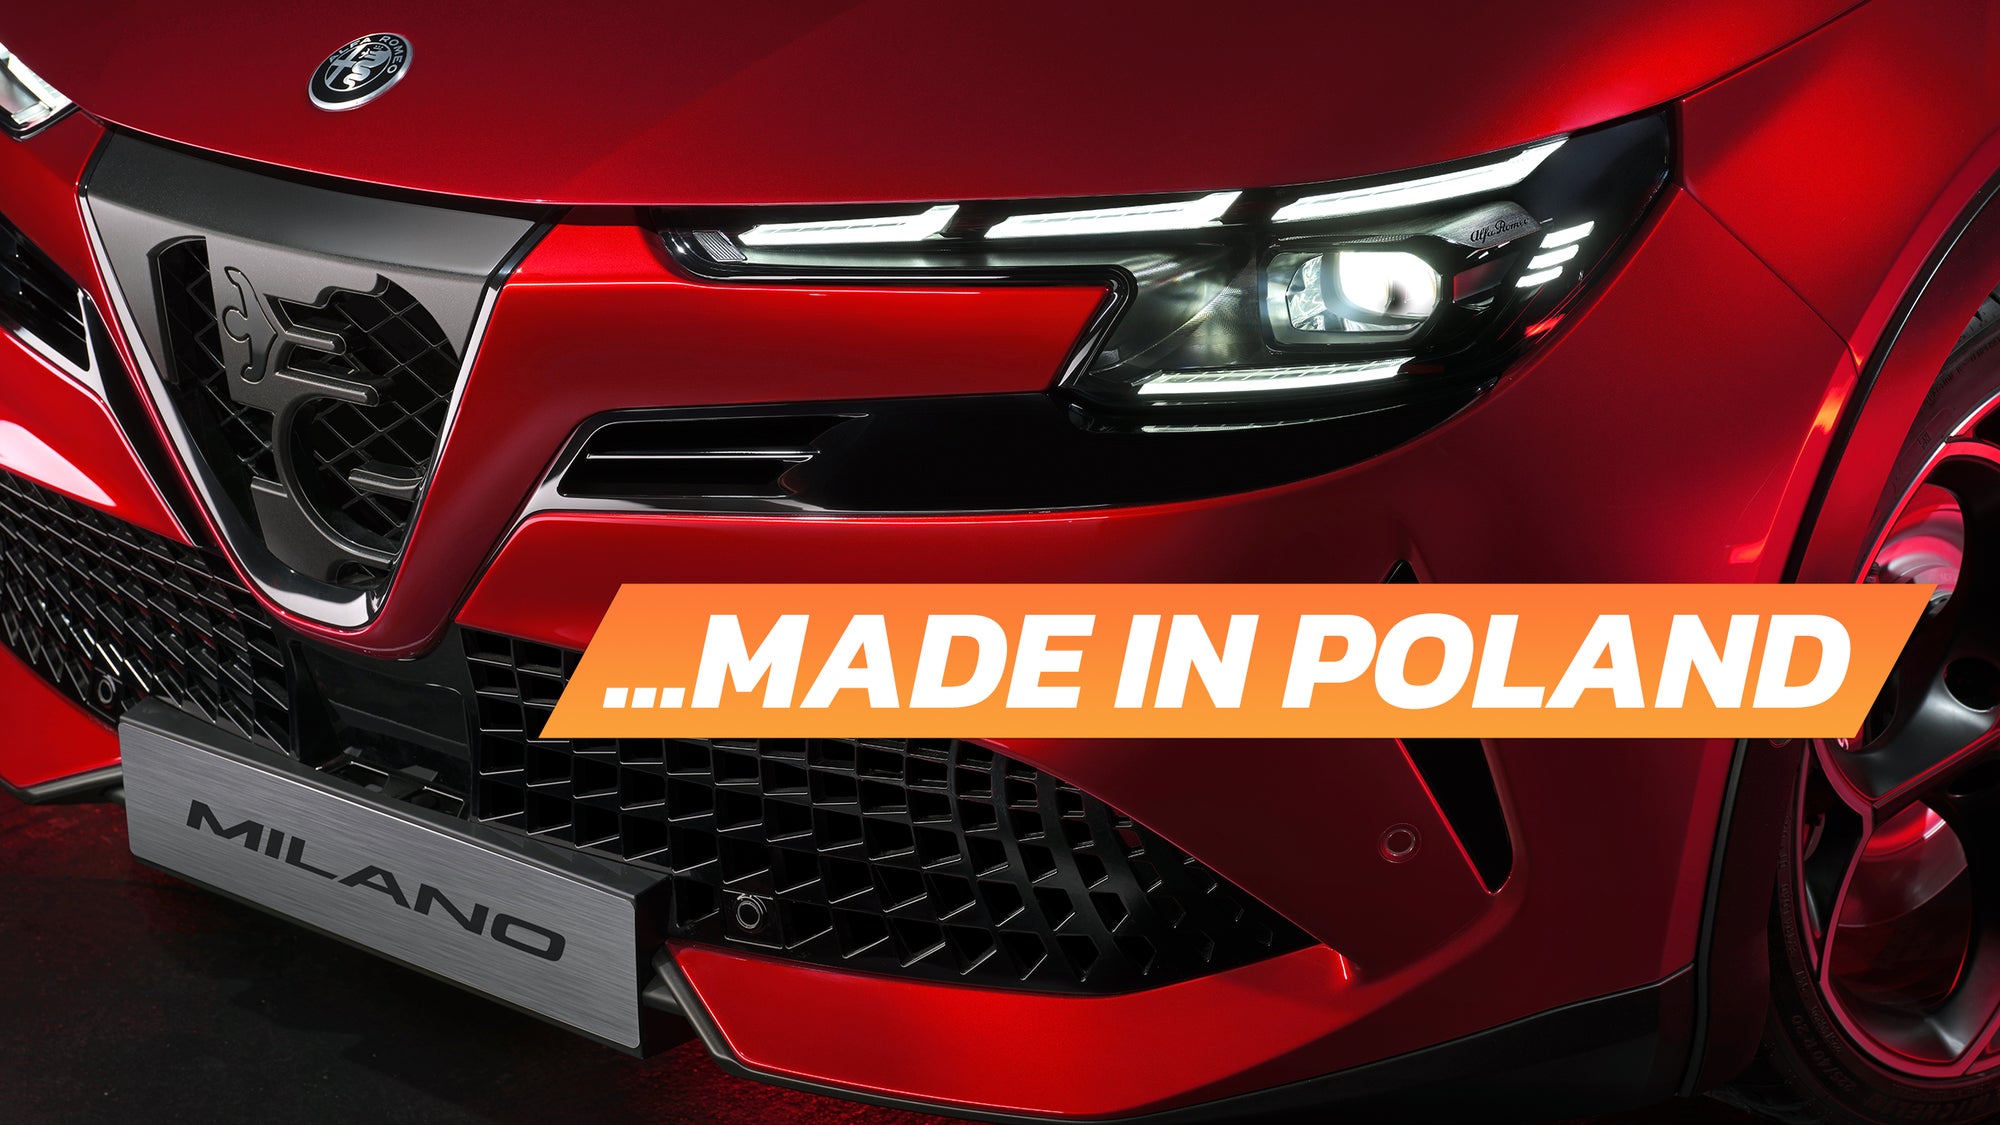 Włochy powiedziały Alfa Romeo, że budowa Milano w Polsce jest nielegalna